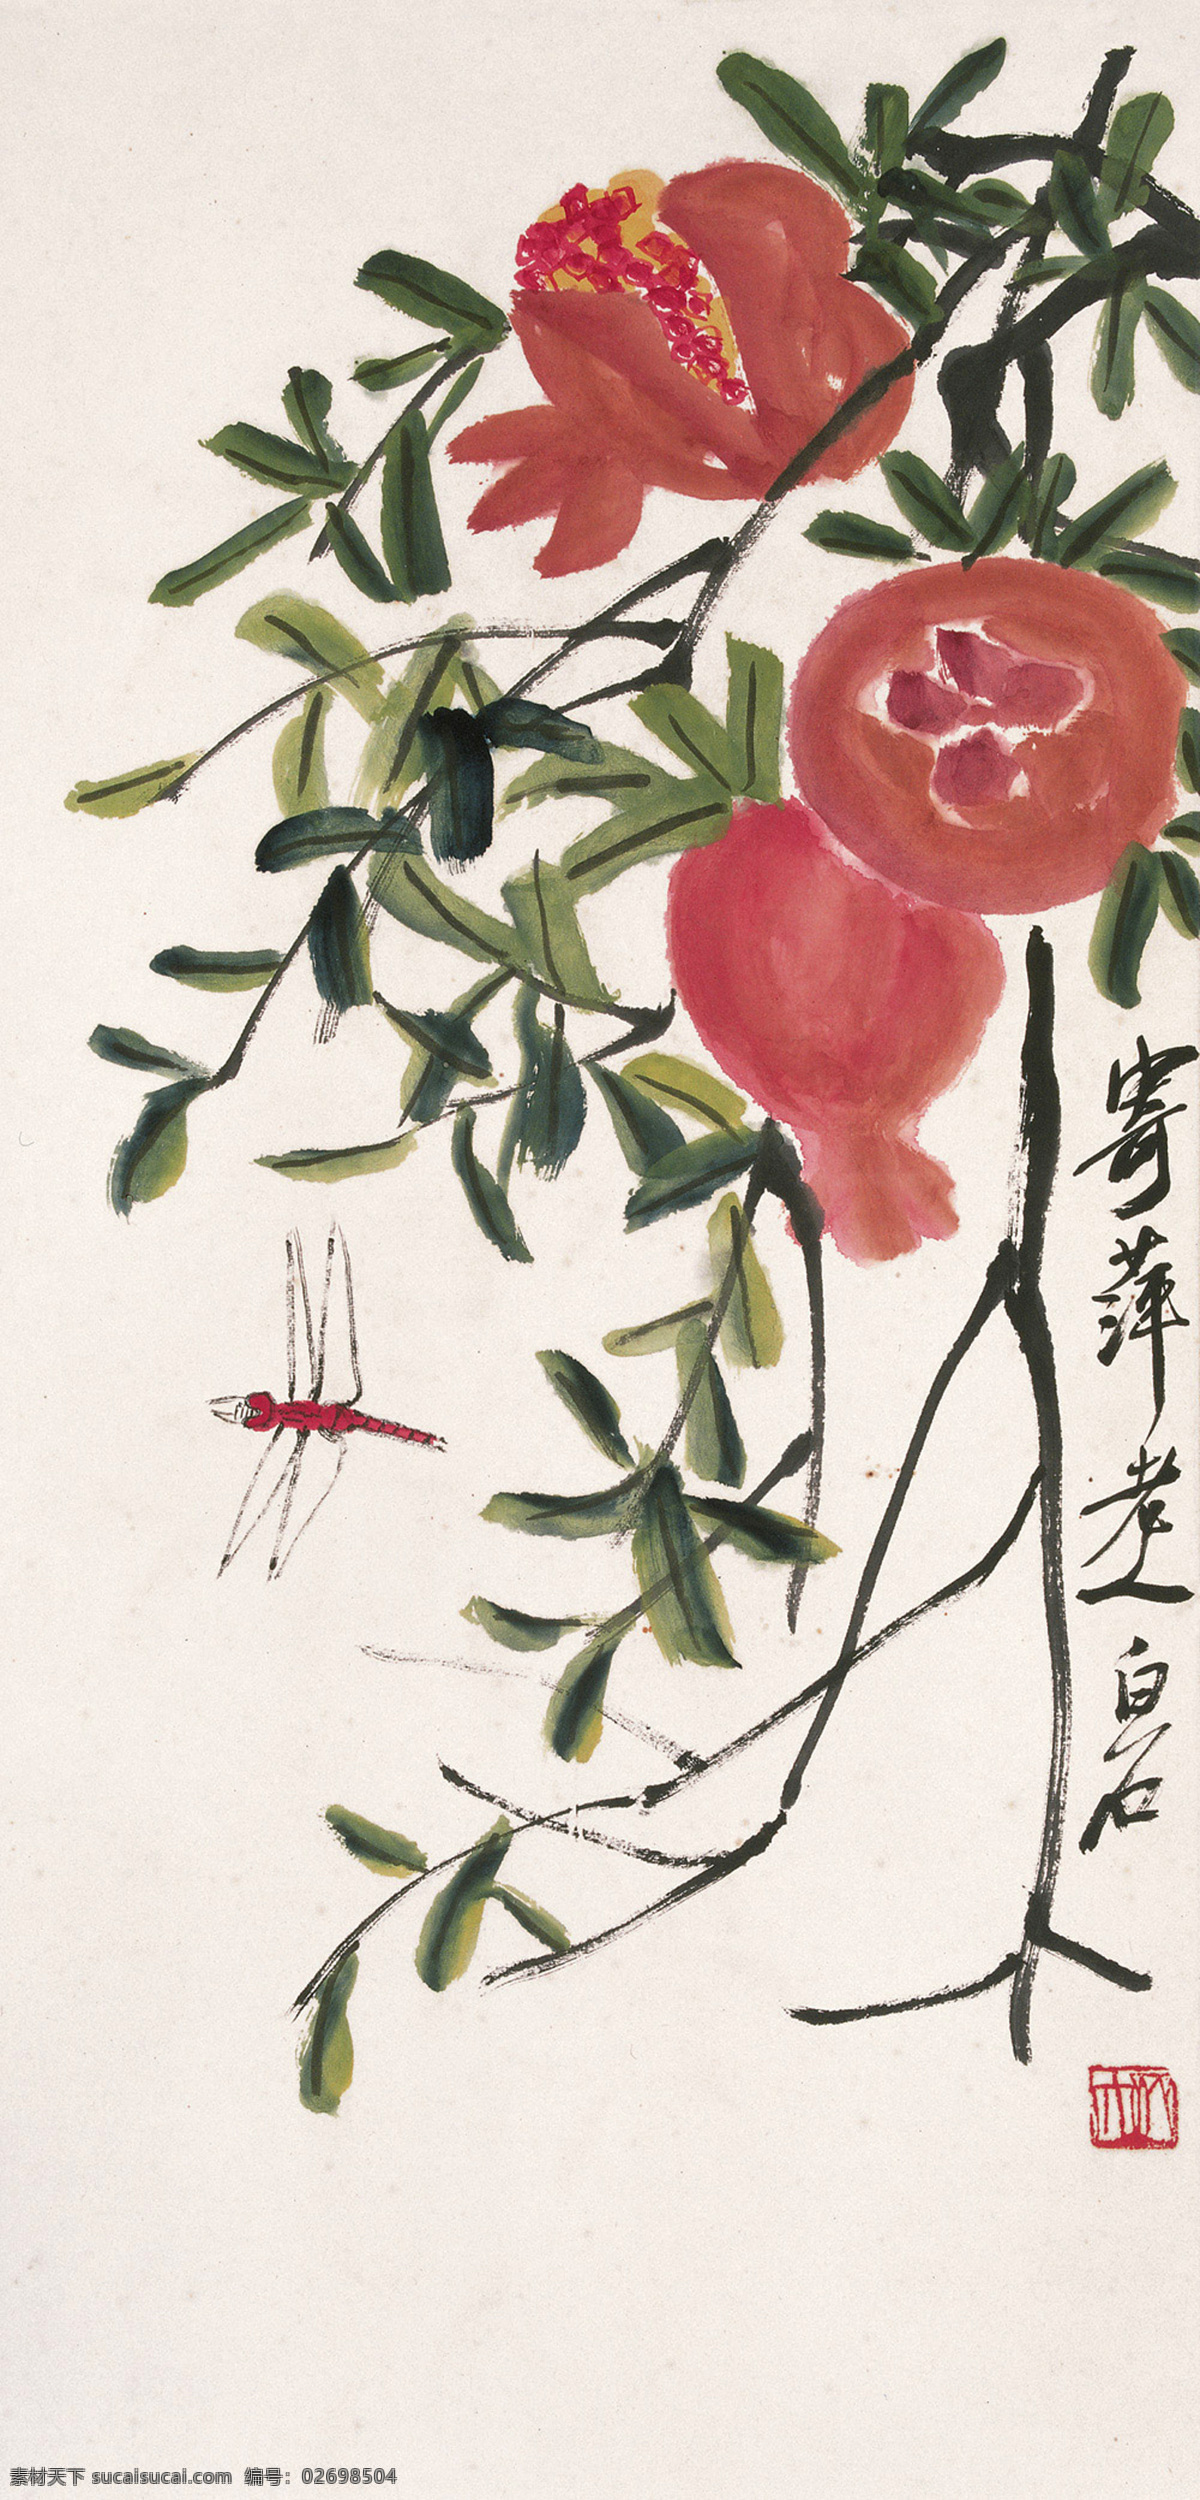 石榴蜻蜓 国画 齐白石 石榴 多子 吉祥 蜻蜓 文化艺术 绘画书法 五谷 果蔬